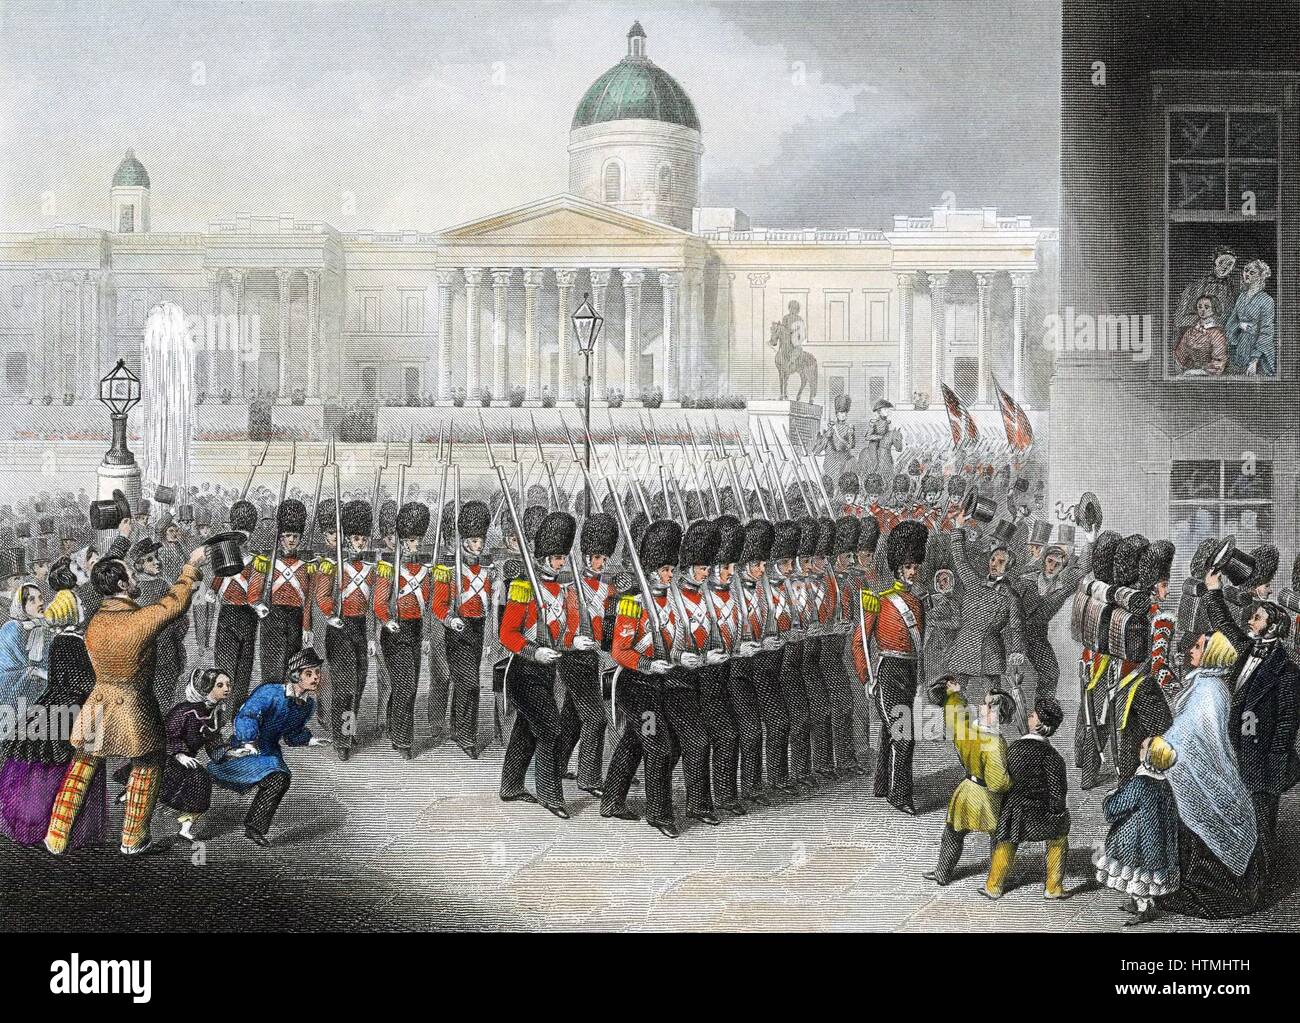 Guerra de Crimea (1853-56 Russo-Turkish War): British granaderos de la Guardia partiendo desde Trafalgar Square, Londres, 22 de febrero de 1854 en la ruta de la Crimea. Grabado pintado a mano c1860. Foto de stock